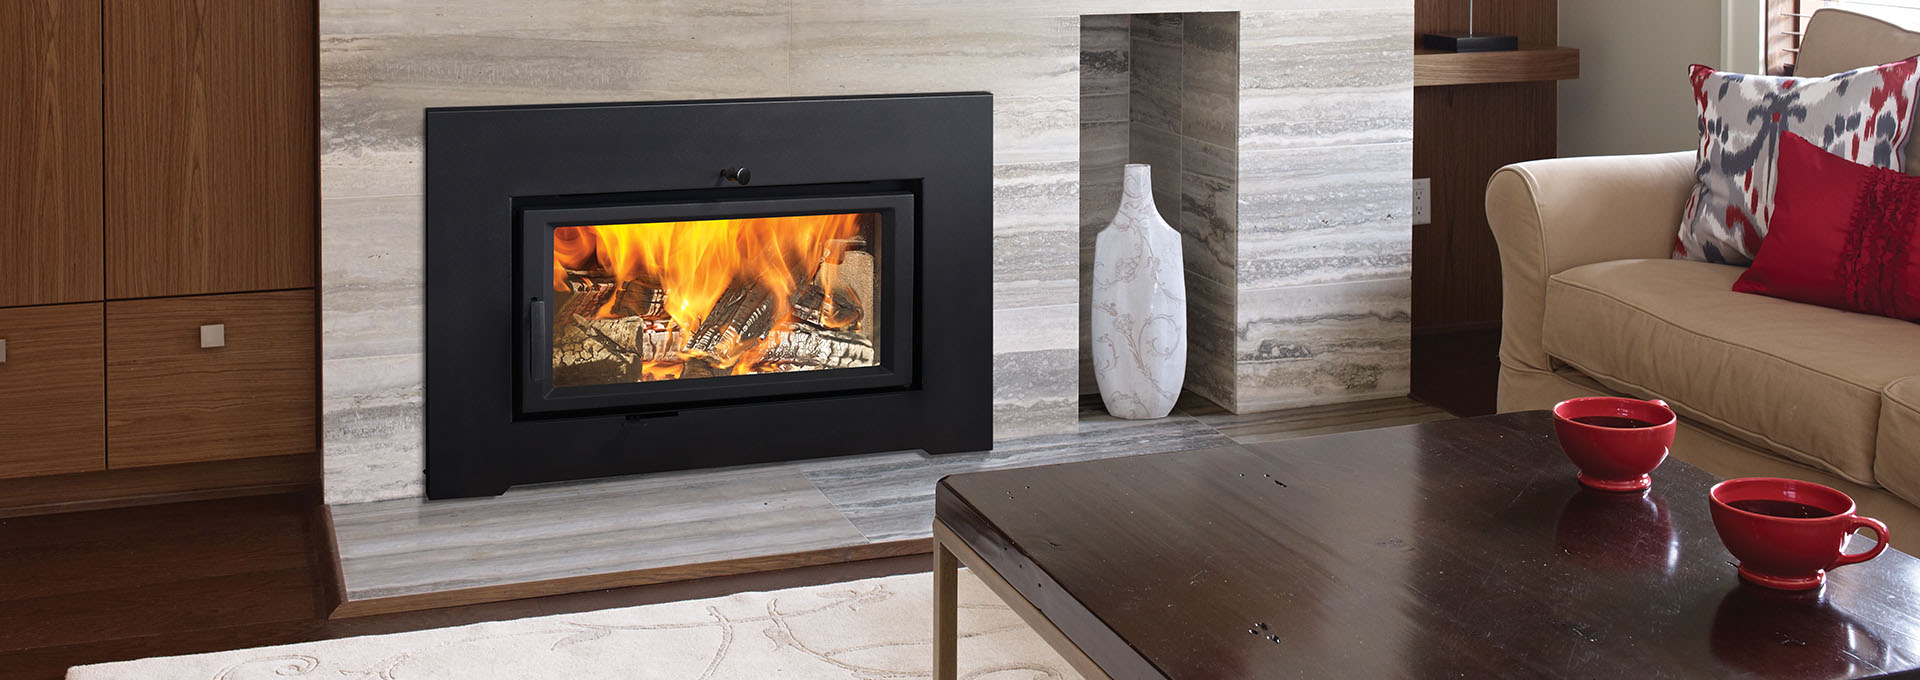 Buck Stove Fireplace Insert New Wood Inserts Epa Certified